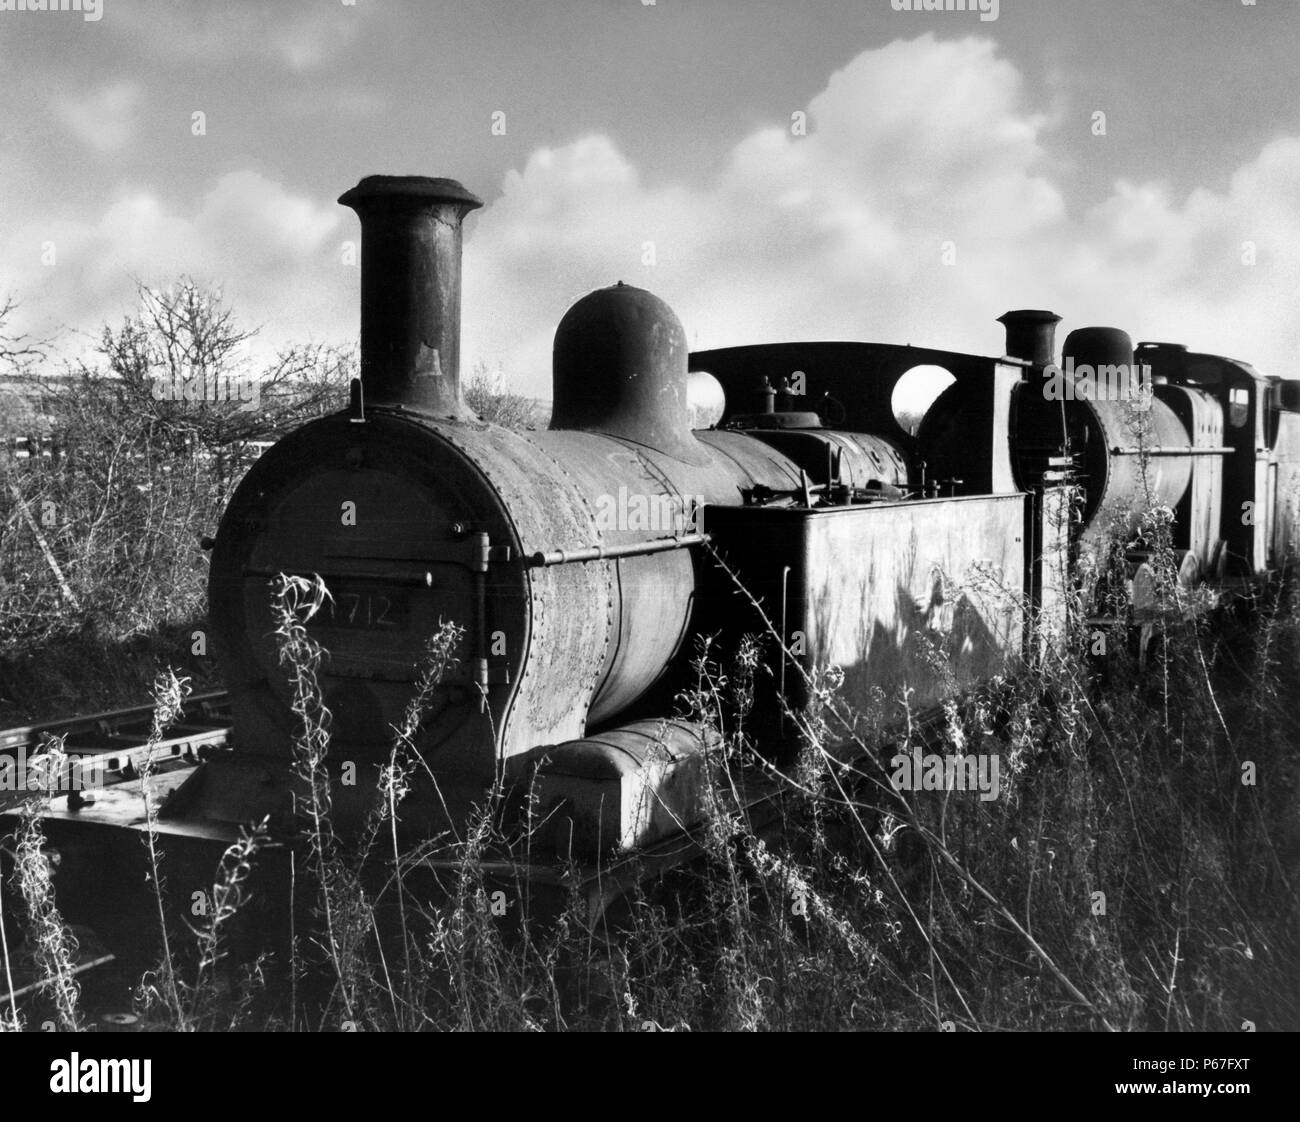 Ferrocarril de midland Imágenes de stock en blanco y negro - Alamy